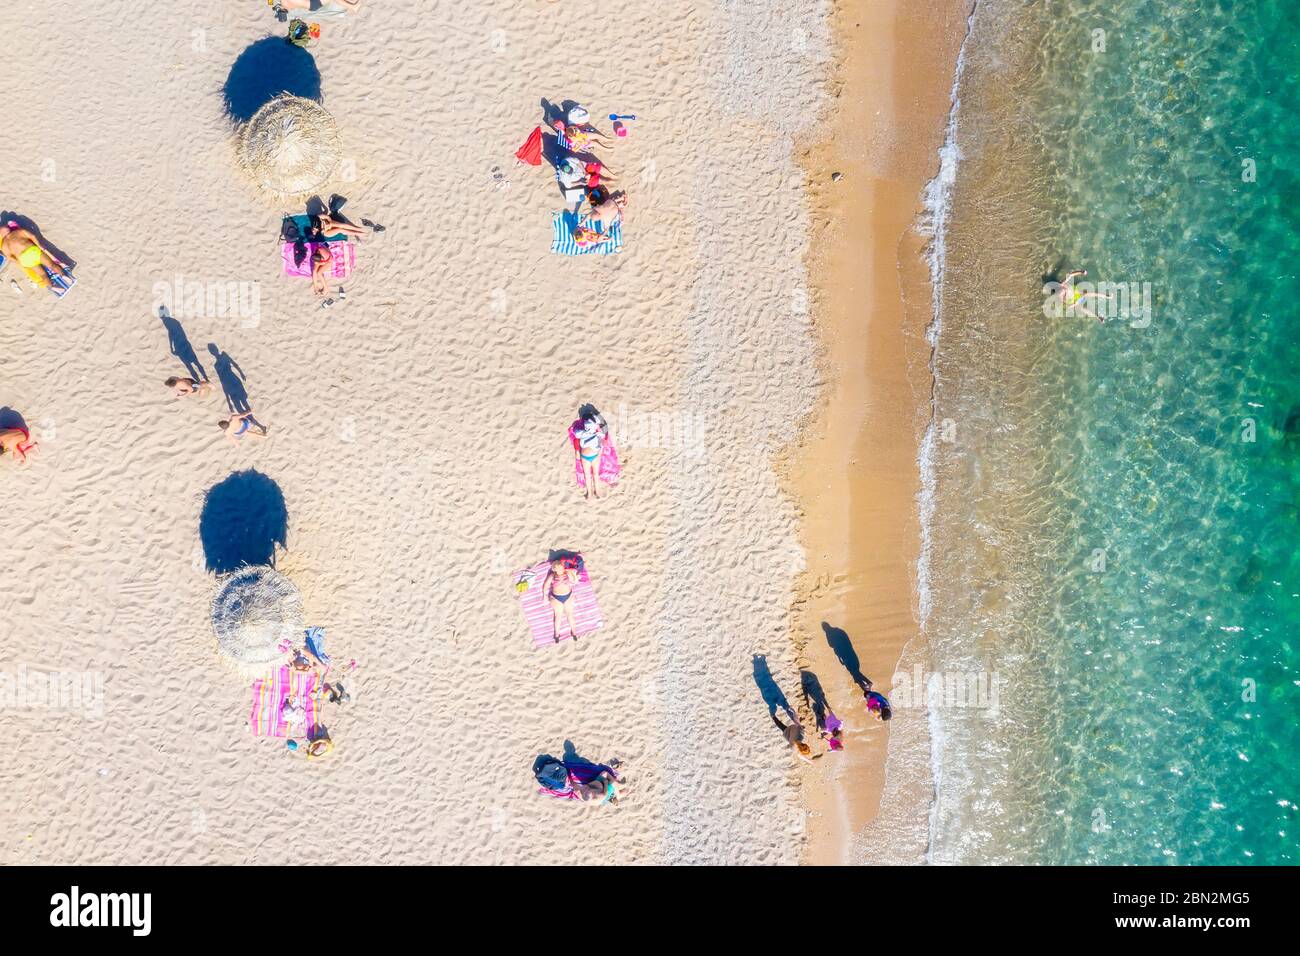 La nuova spiaggia di Glyfada, adattata al tempo del coronavirus che attua norme sanitarie rigorose e la distanza di sicurezza per evitare congestioni Foto Stock